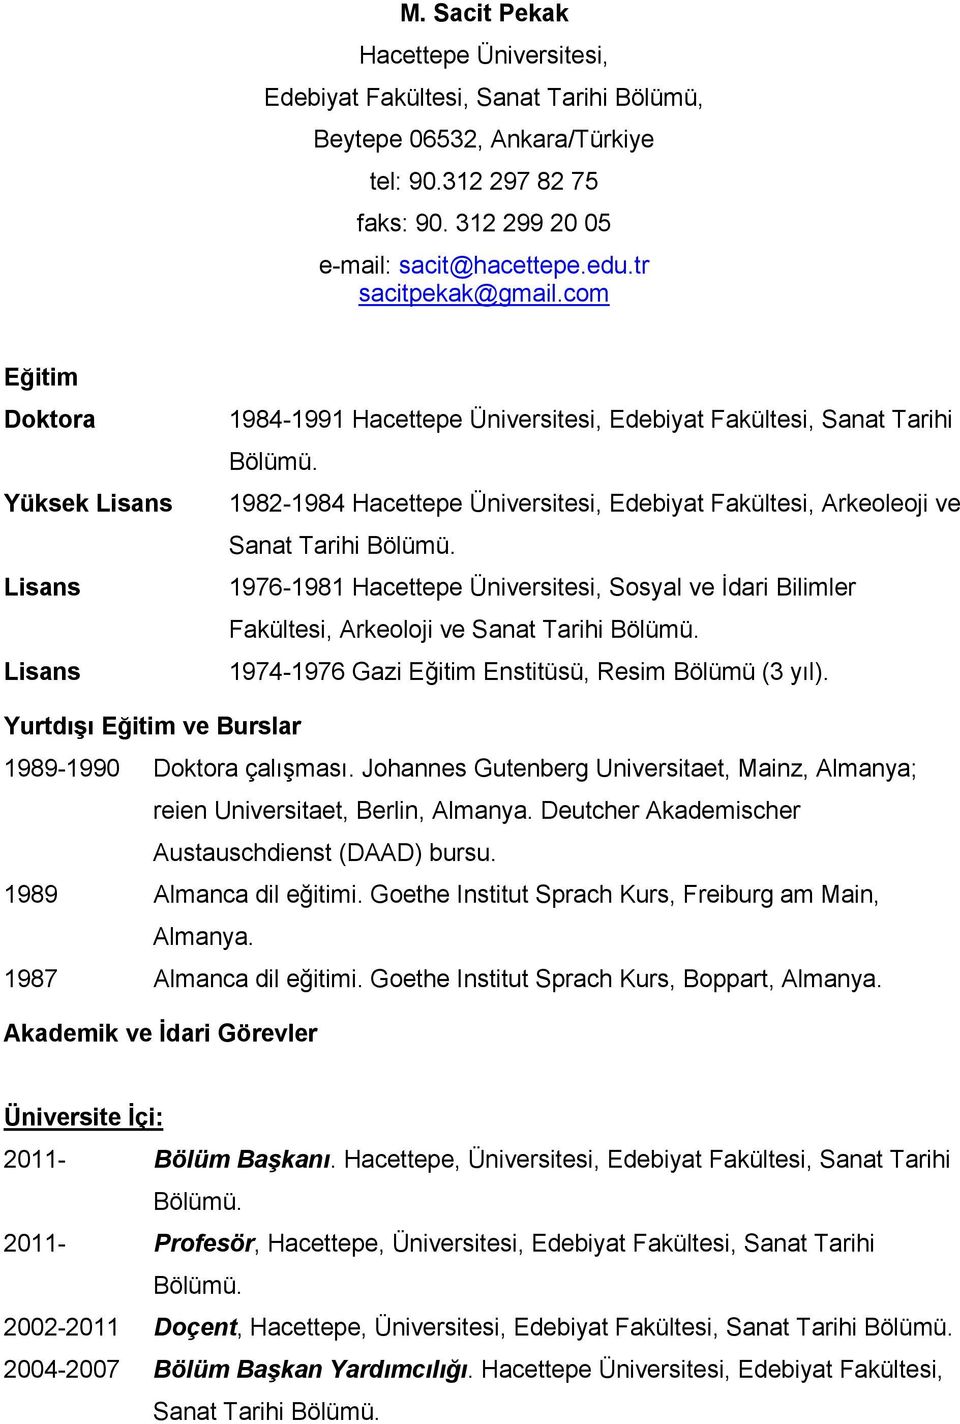 1982-1984 Hacettepe Üniversitesi, Edebiyat Fakültesi, Arkeoleoji ve Sanat Tarihi Bölümü. 1976-1981 Hacettepe Üniversitesi, Sosyal ve İdari Bilimler Fakültesi, Arkeoloji ve Sanat Tarihi Bölümü.